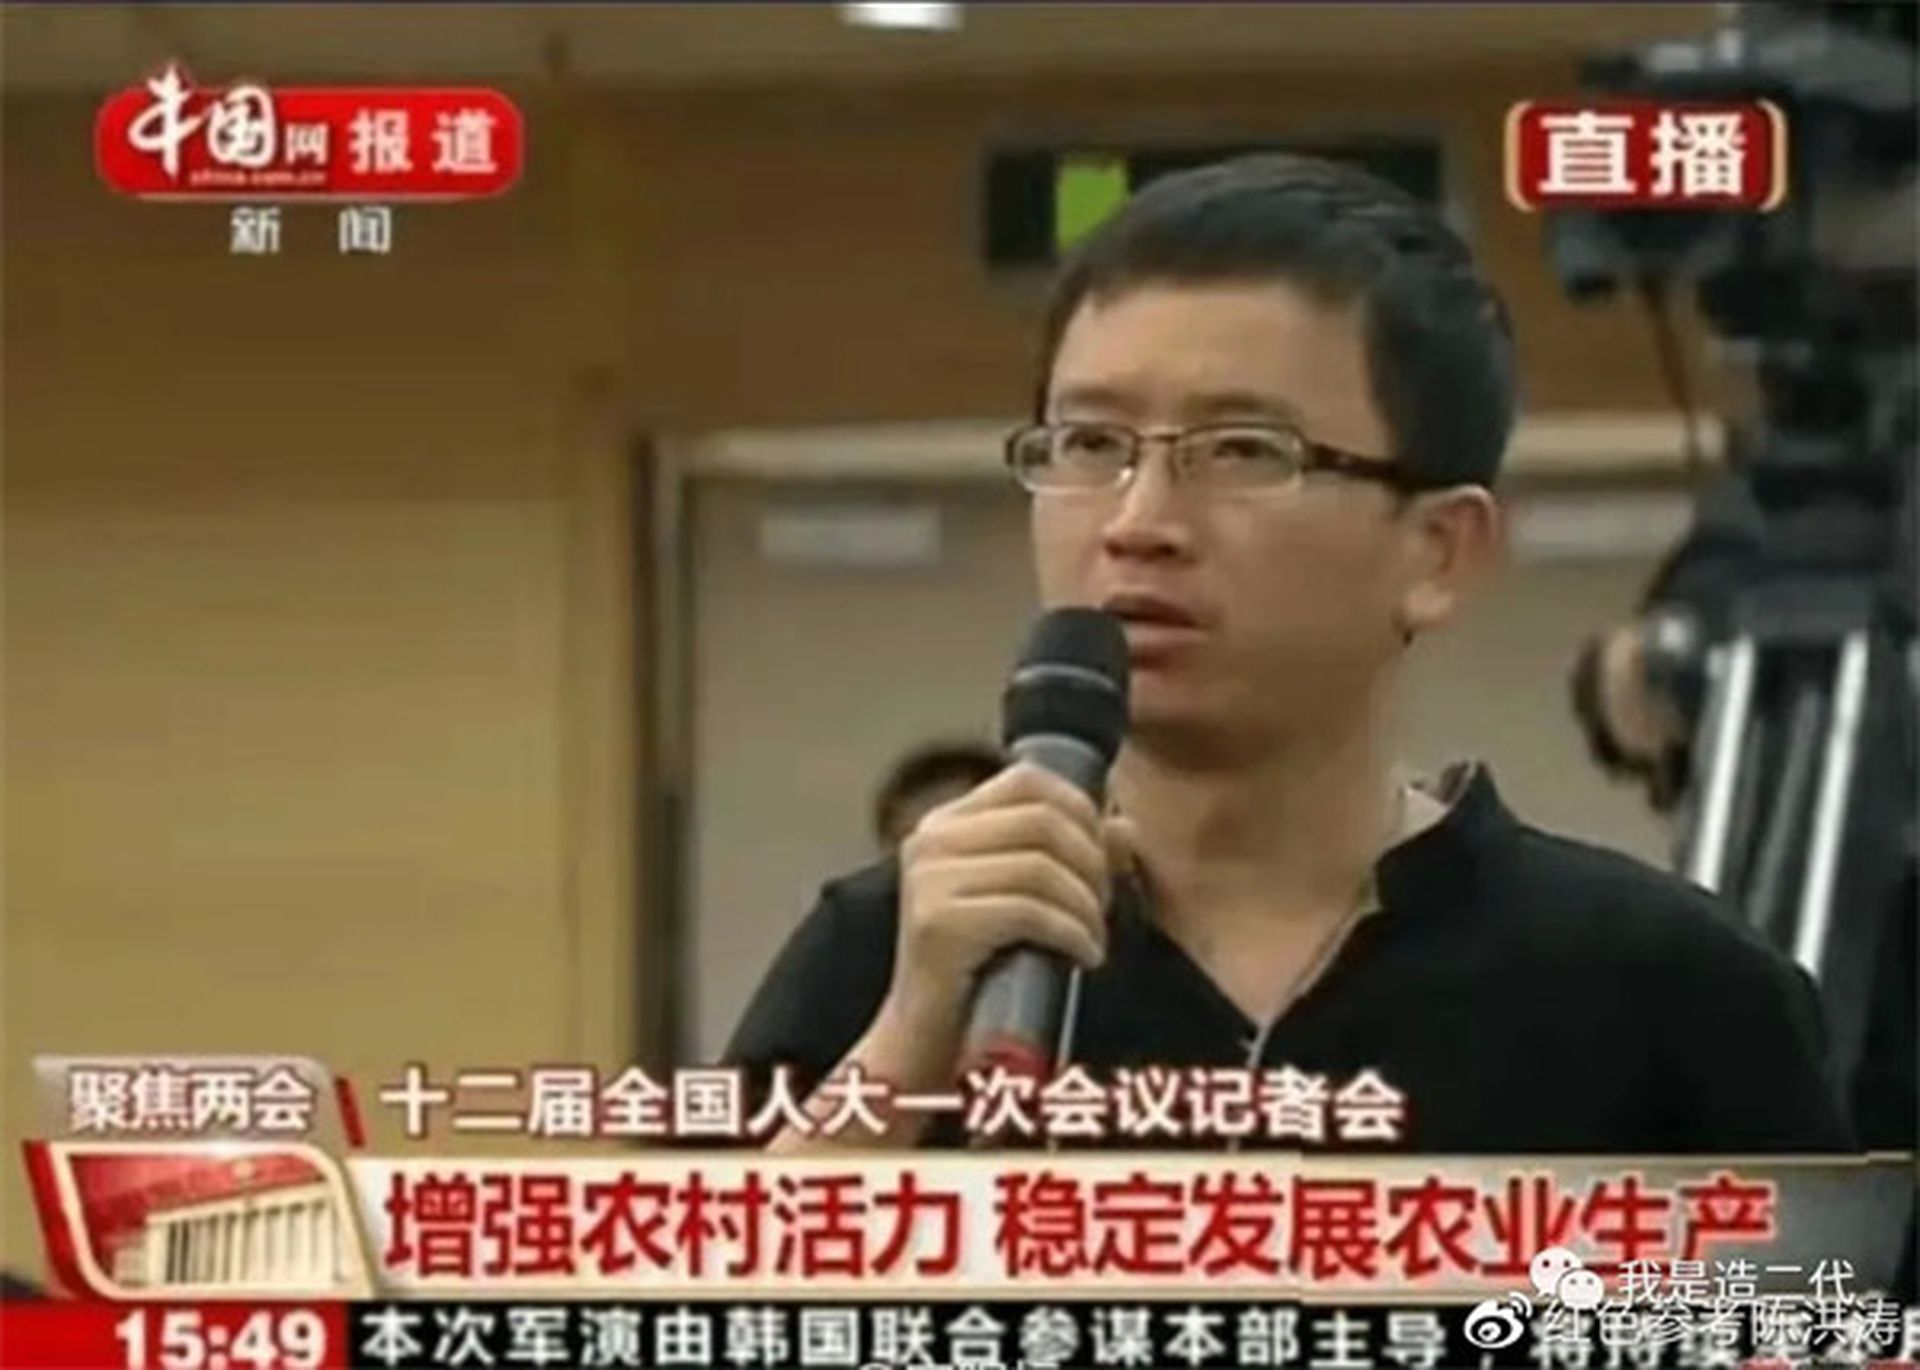 宋阳标是调查记者，曾任职《时代周报》北京记者站站长，他曾在2013年采访全国两会时，向民政部长提问死猪江葬问题引起轰动。（微信＠我是造二代）